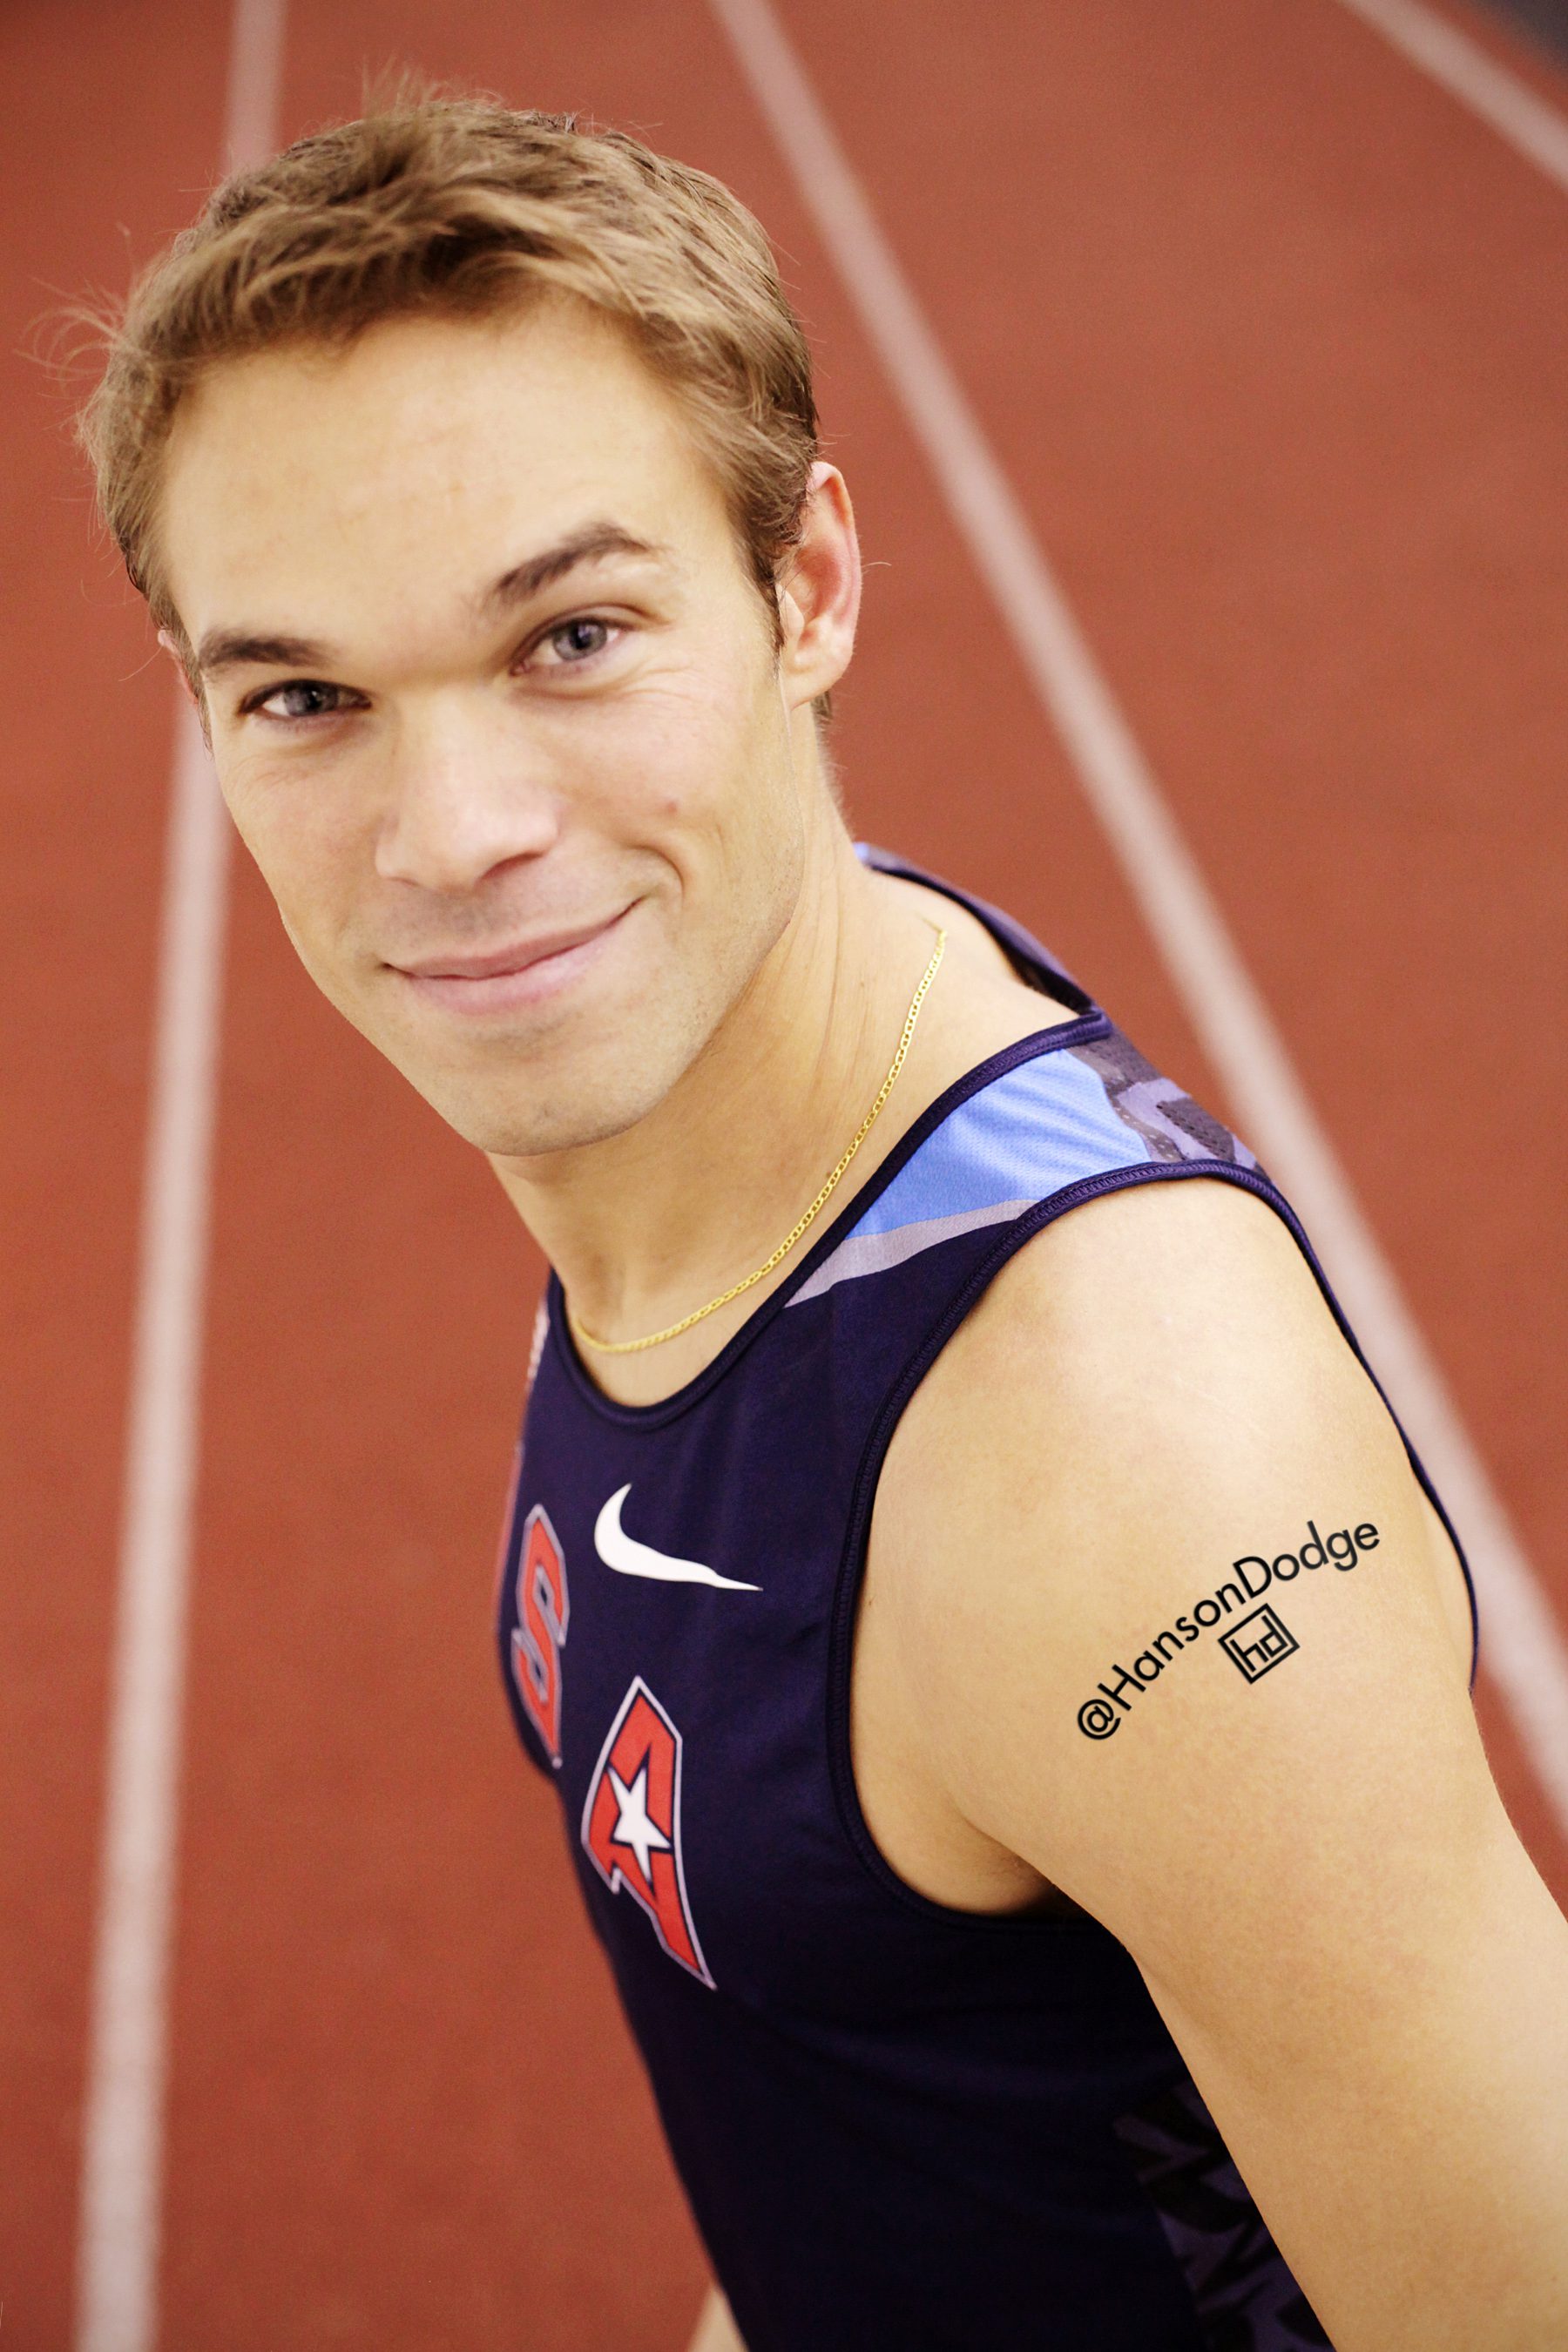 track runner tattoos